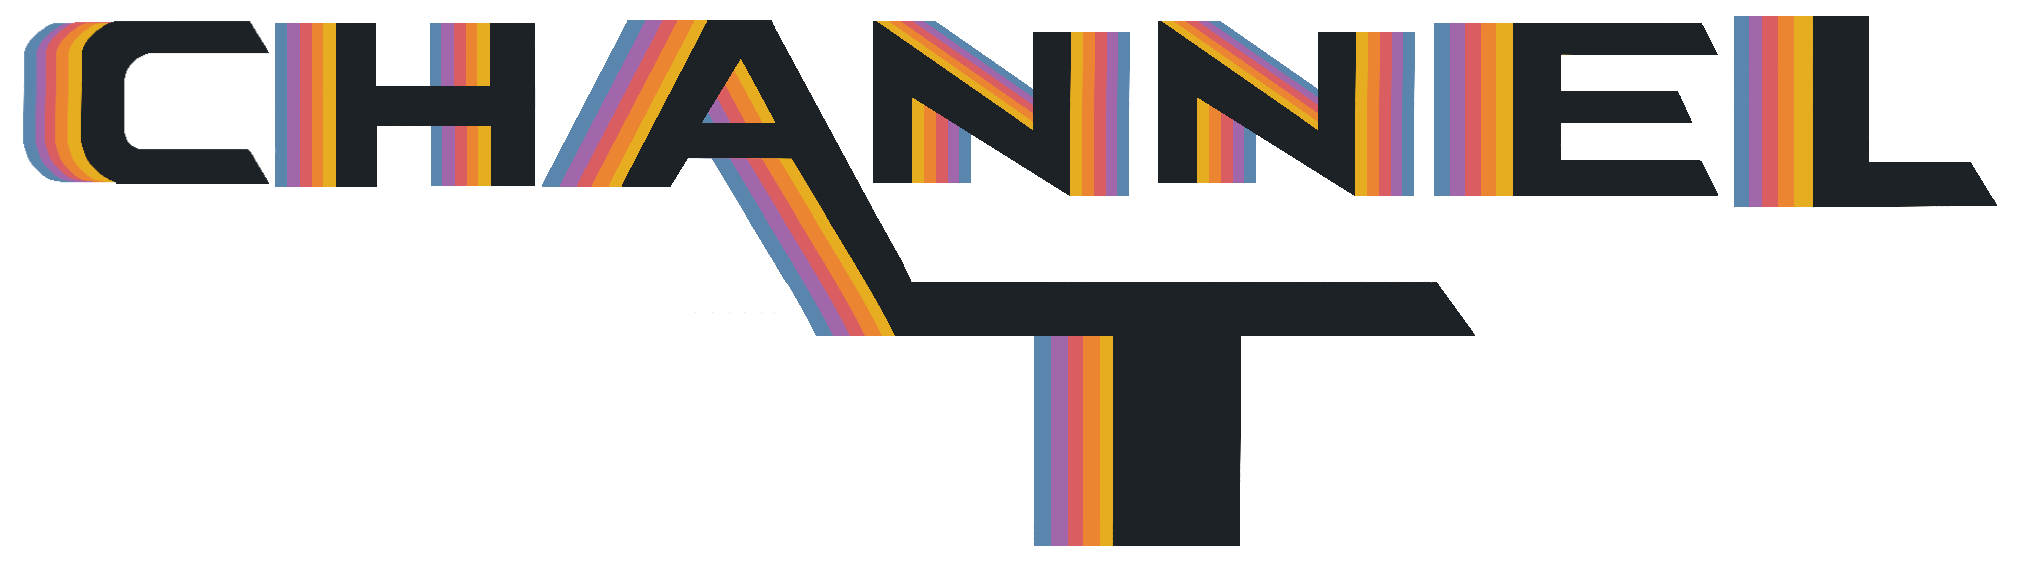 channel_t logo